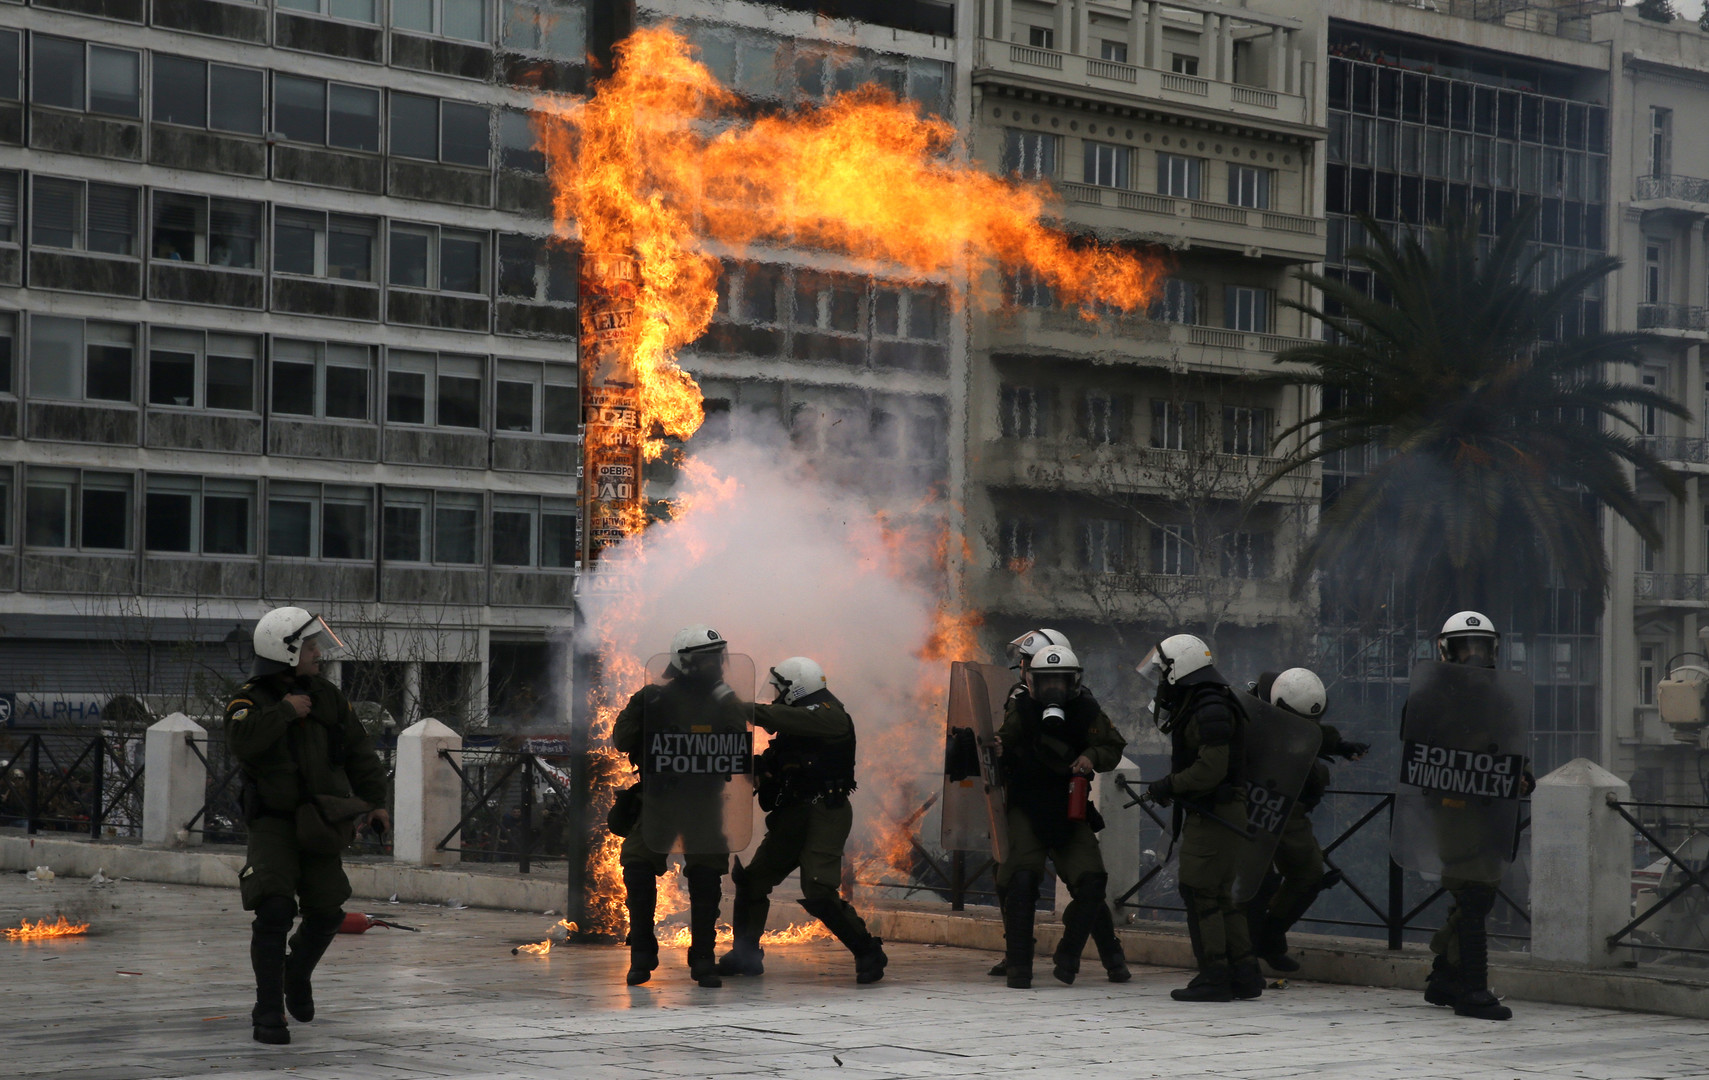 Des gaz lacrymogènes et des cocktails Molotov déployés pendant la grève générale en Grèce (VIDEOS)